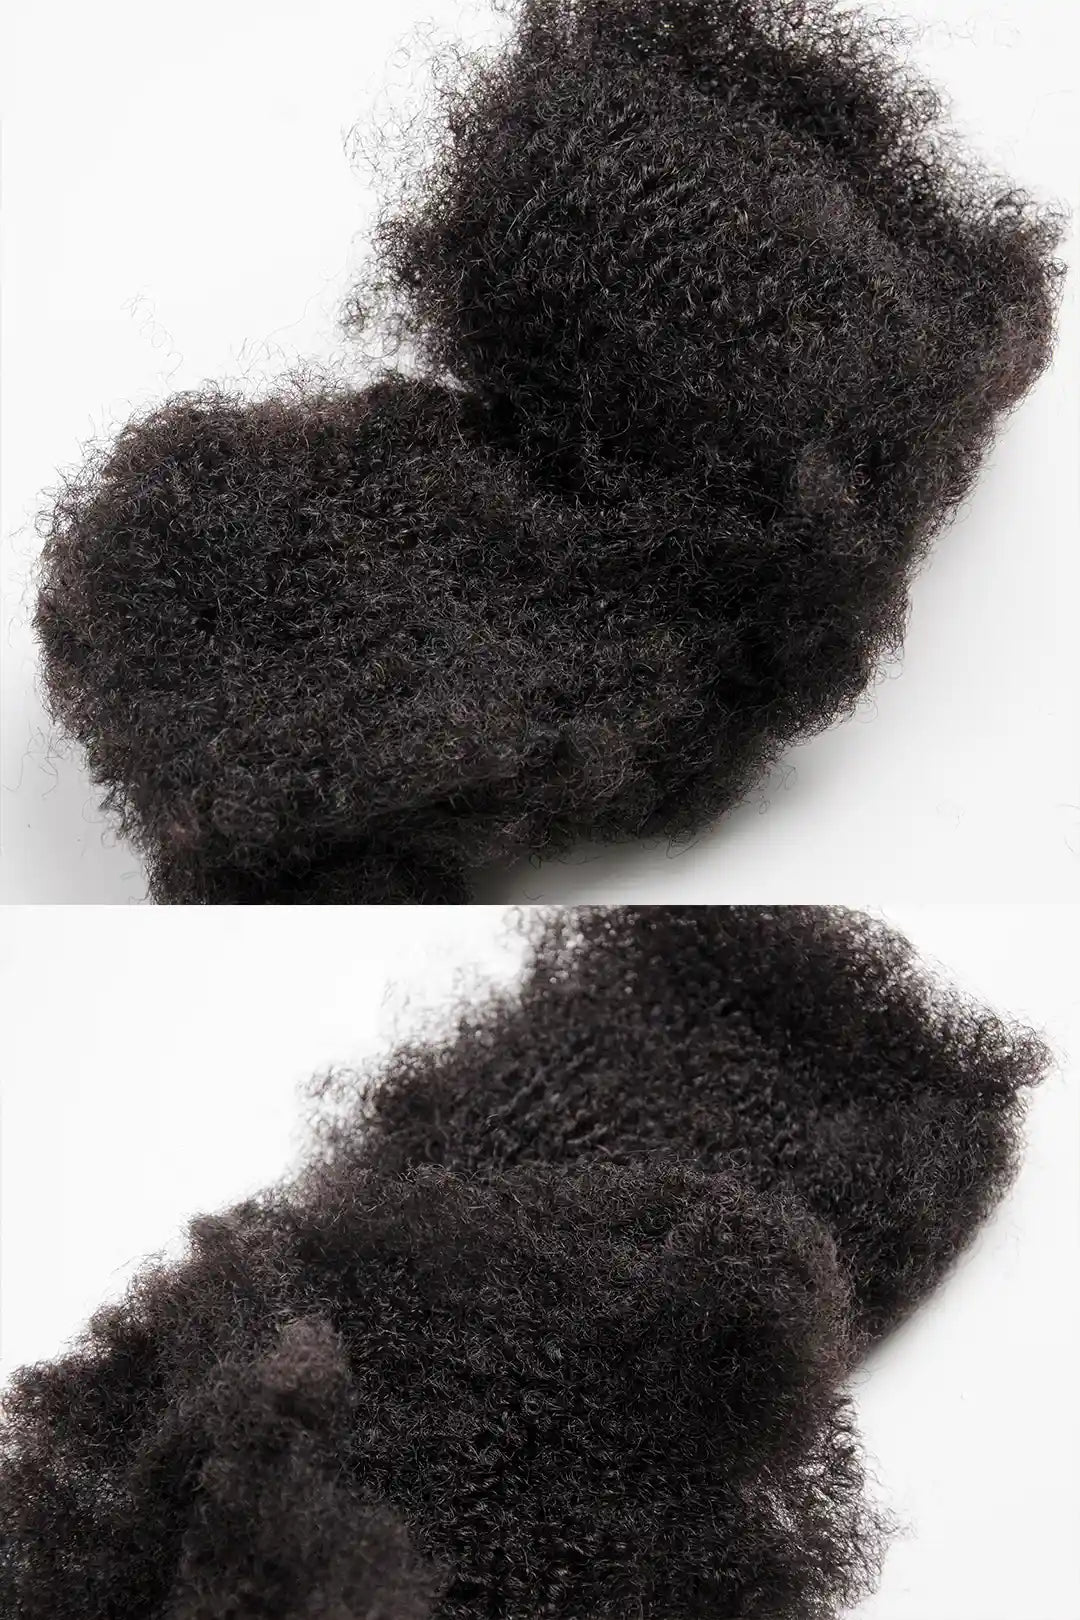 Afro Kinky Hair Bulk for Making Natural Black Dreadlocks Repairs (30g per pack)